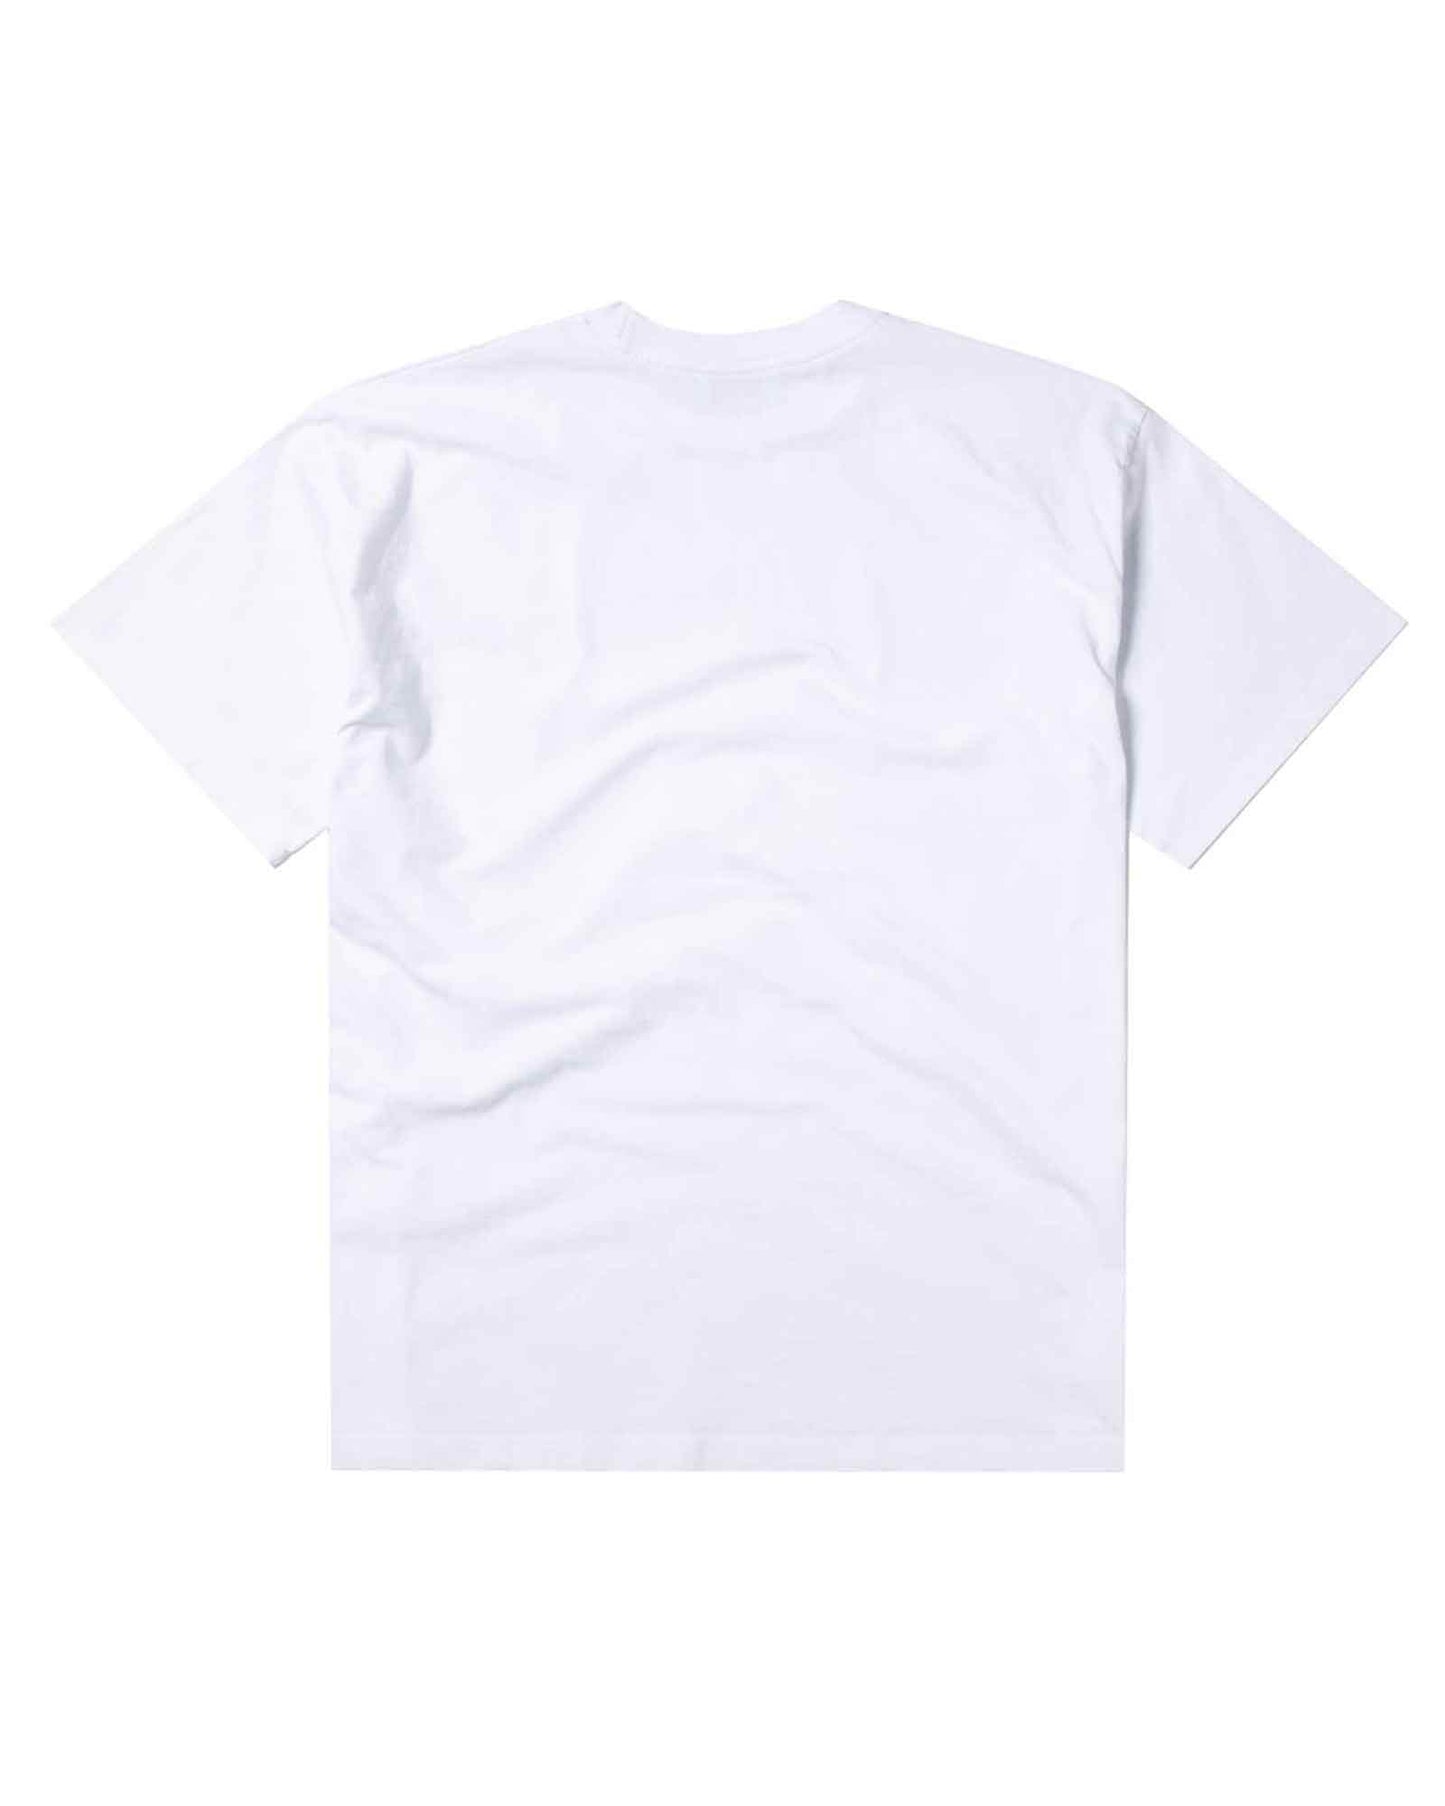 アリーズ/Problemo Supremo SS Tee/Tシャツ/White